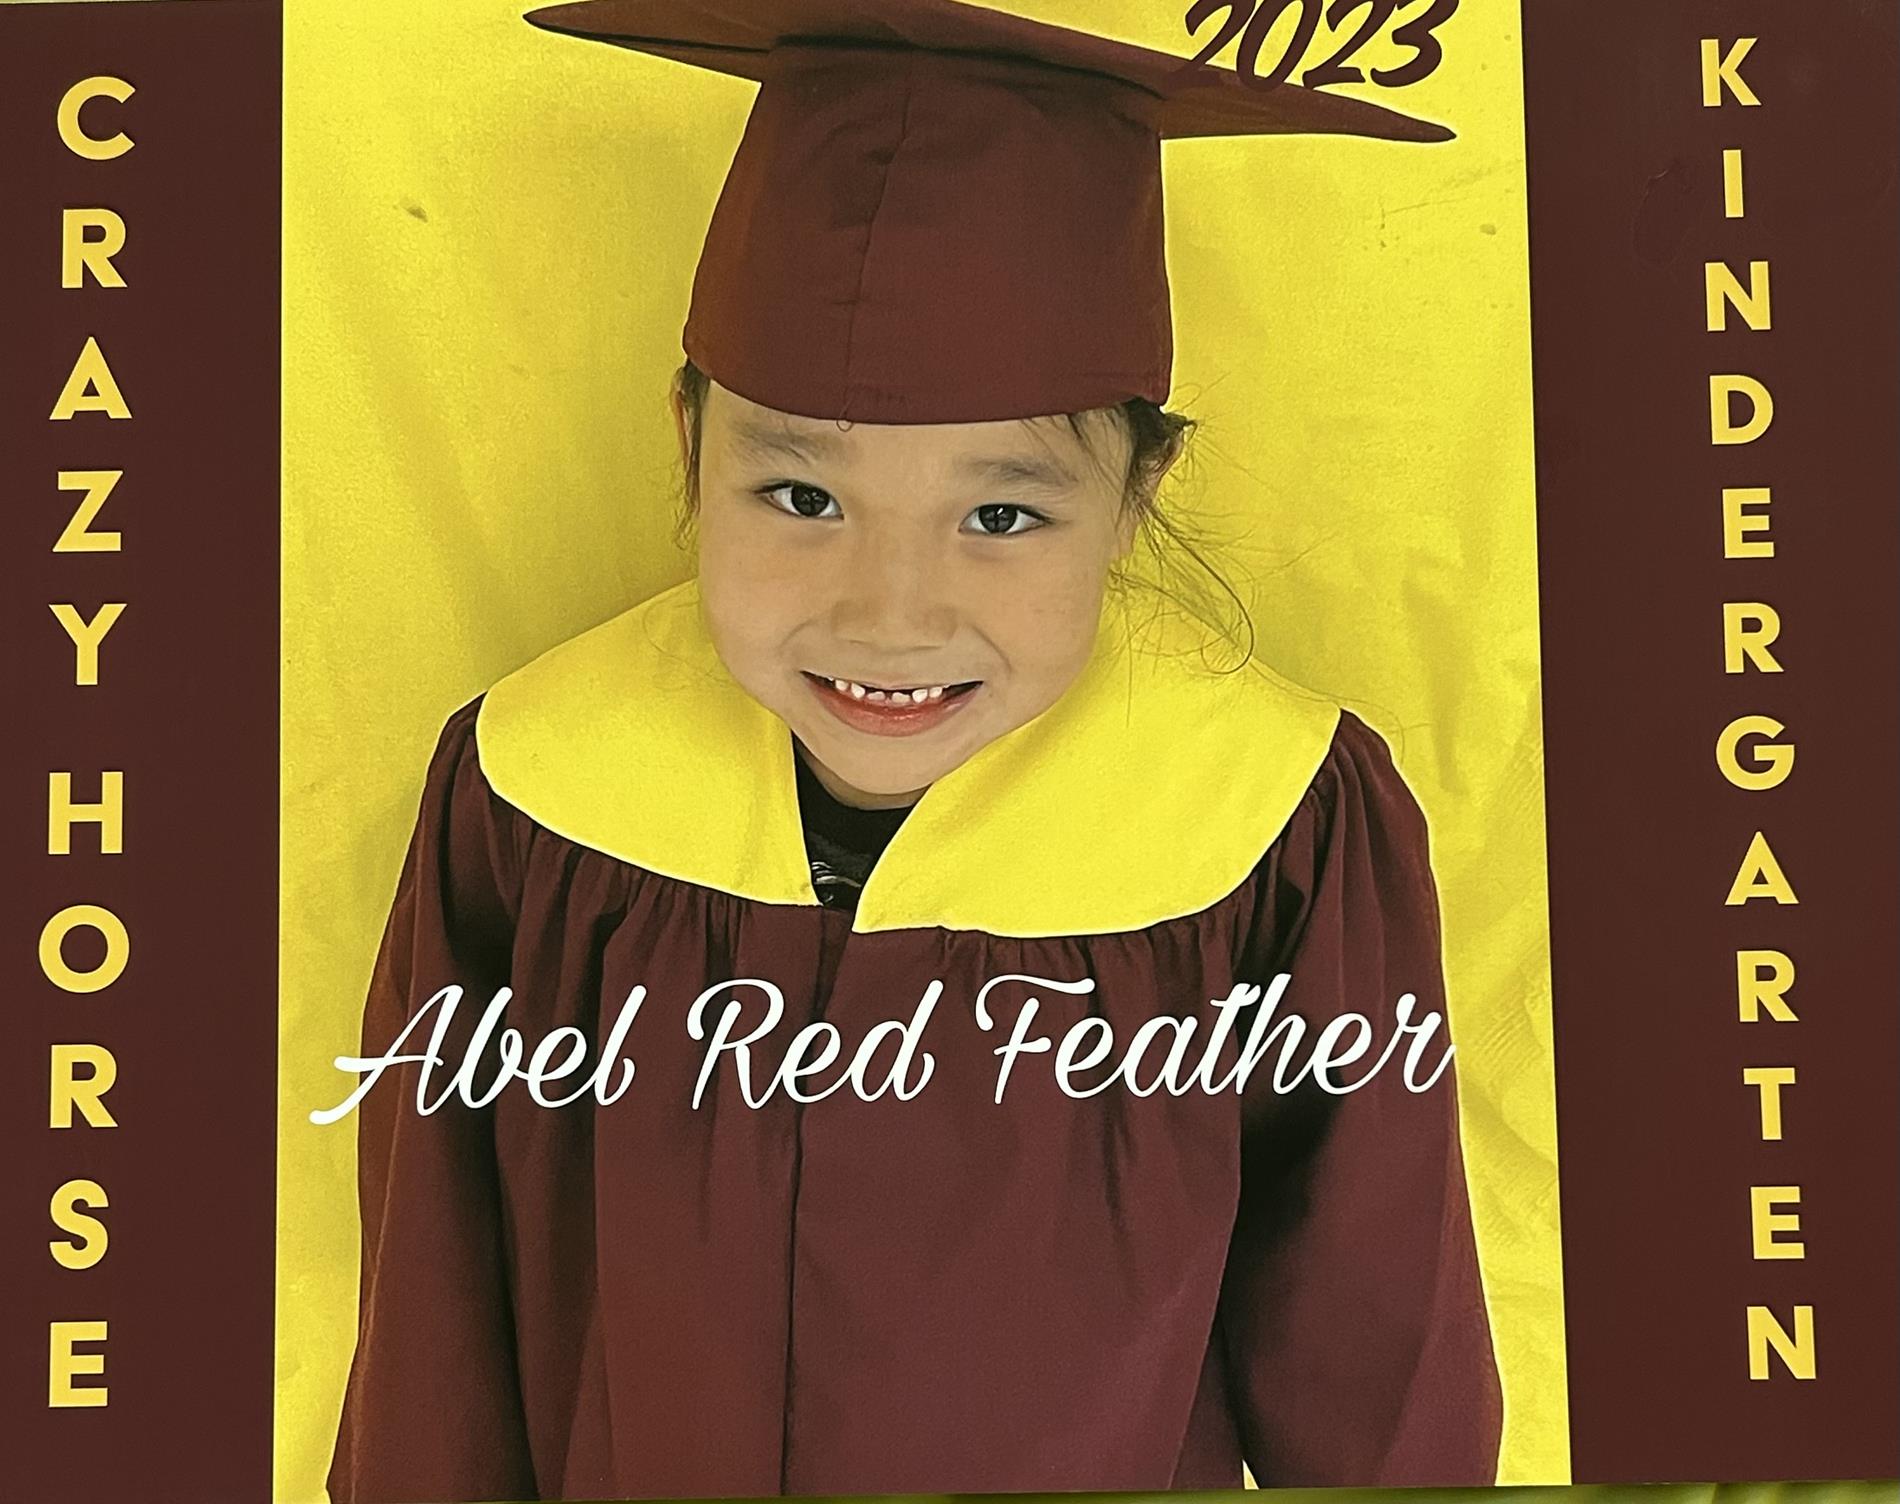 2023 Kindergarten Graduation 